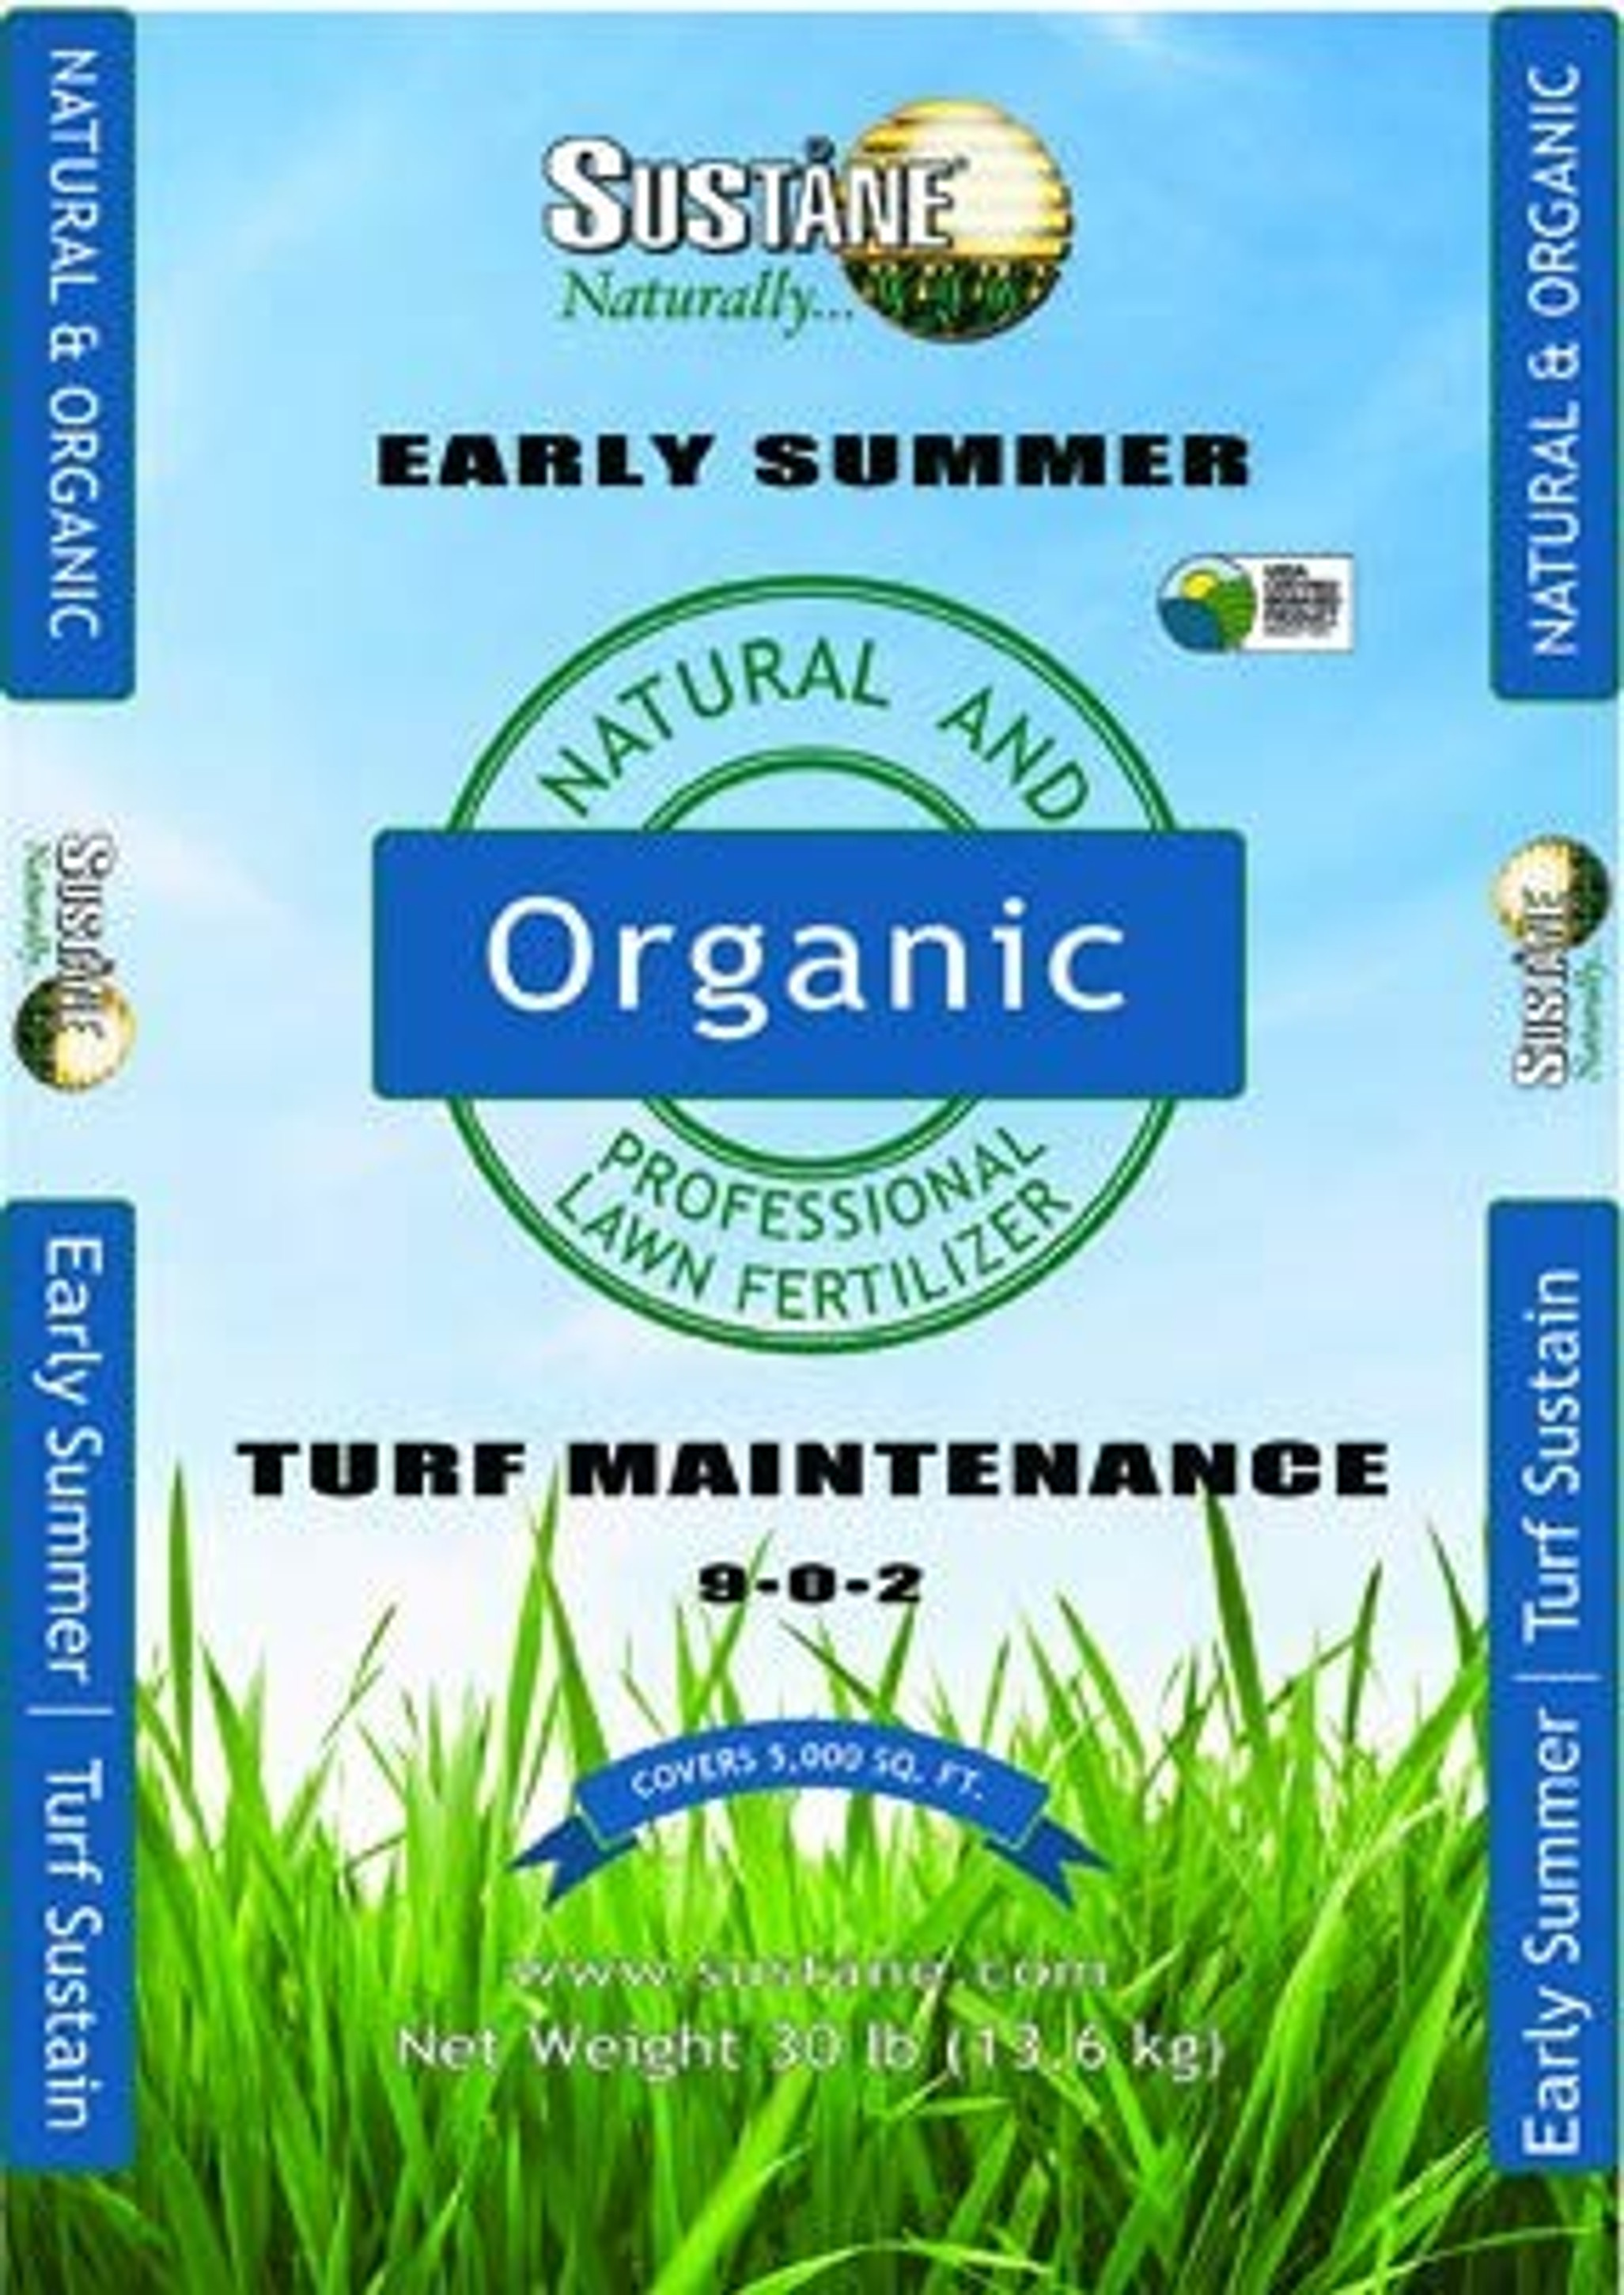 Sustane 9-0-2 Turf Maintenance Fertilizer (Early Summer), 30-Pound